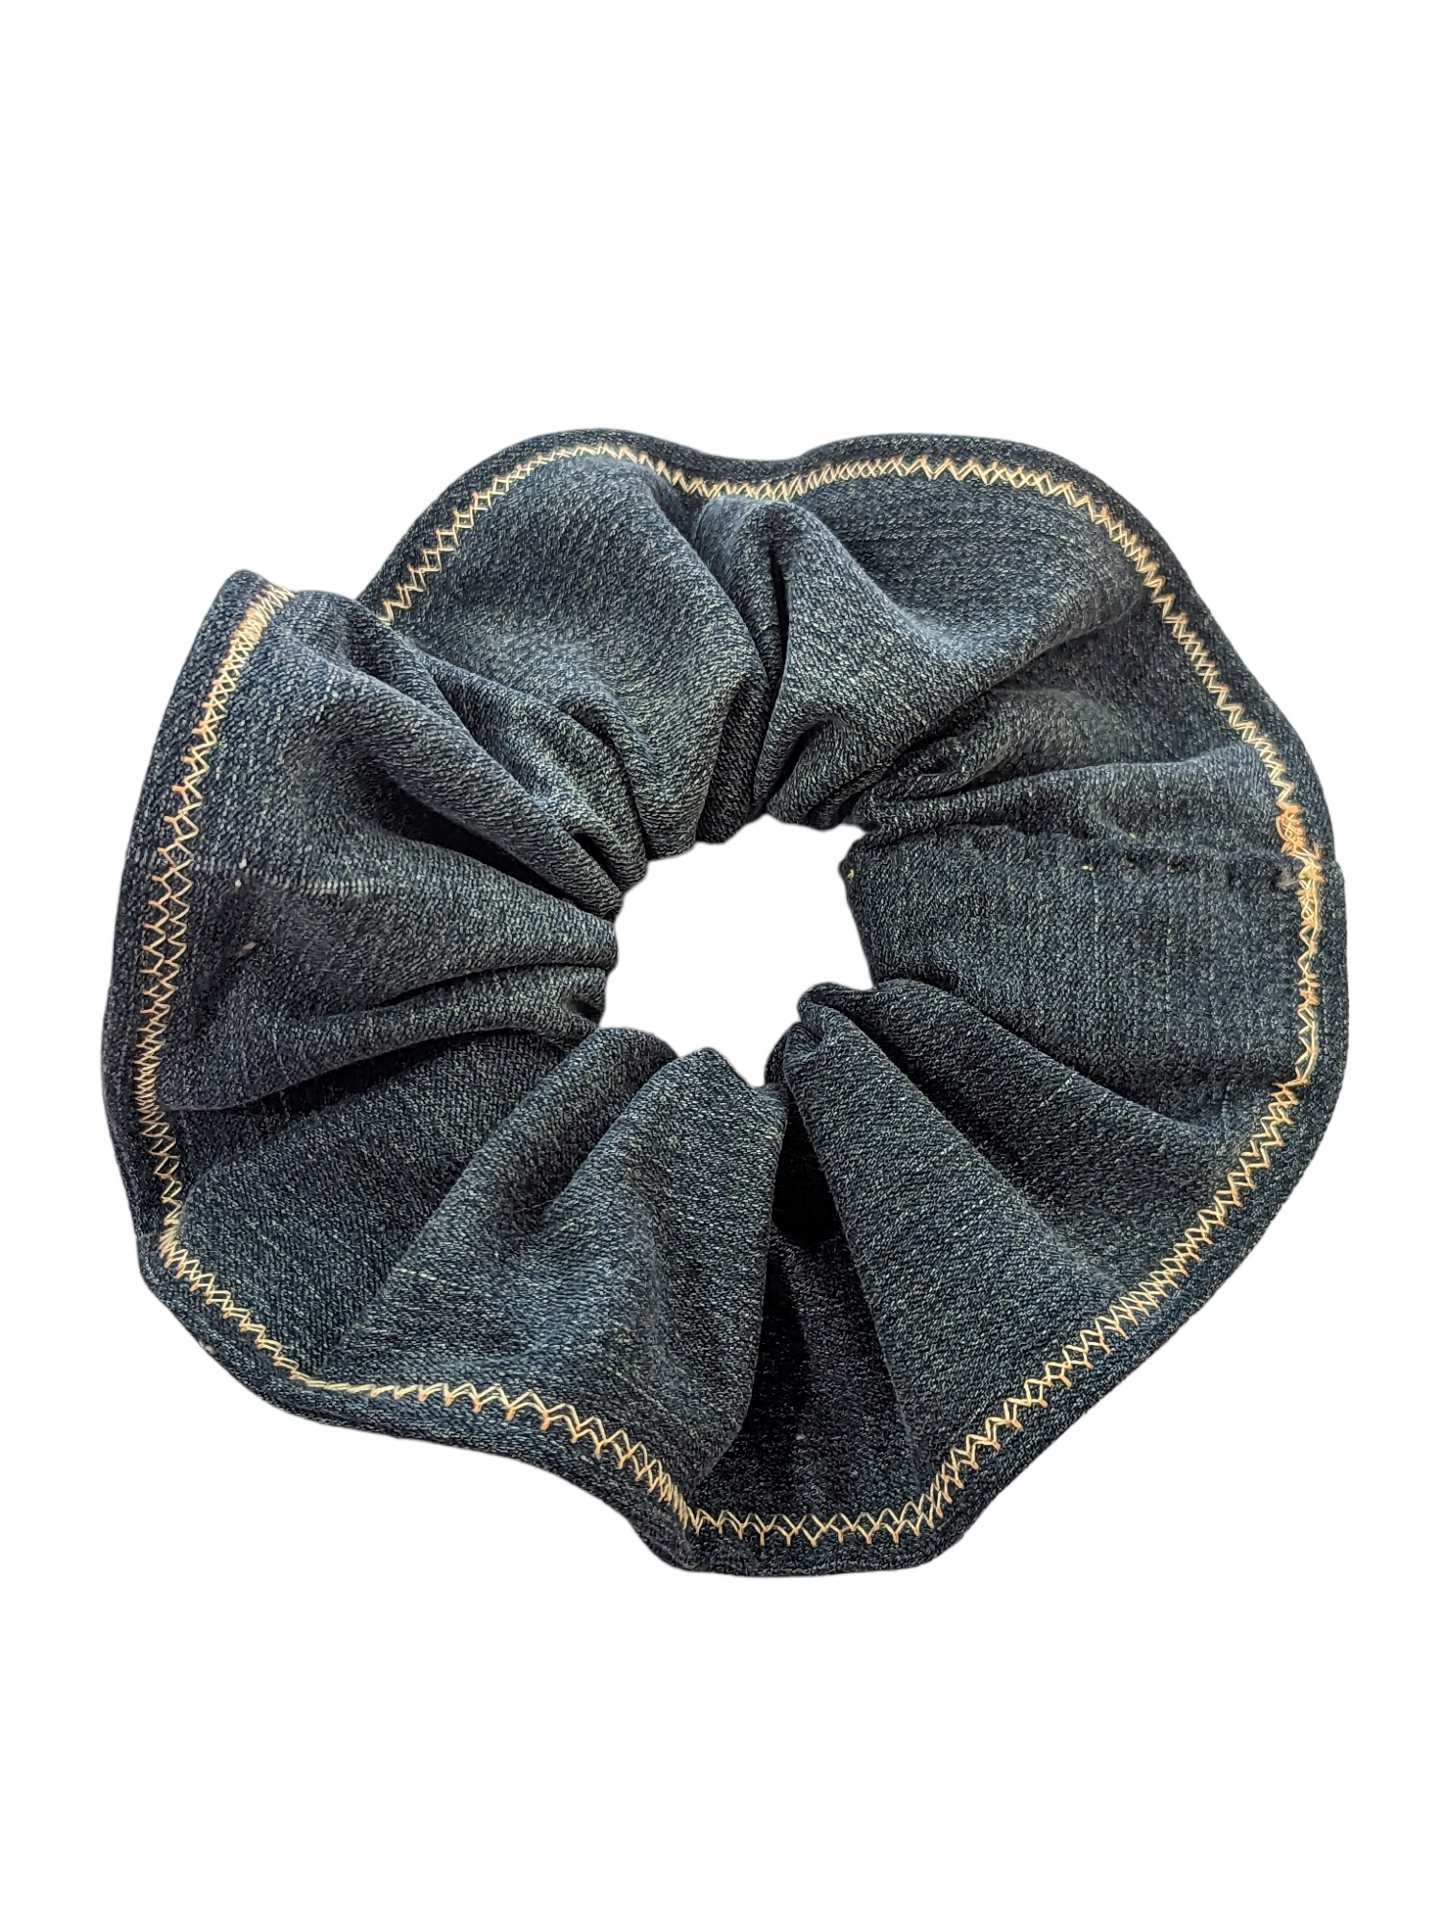 Medium Scrap Fabric Scrunchie by Becky Bacsik